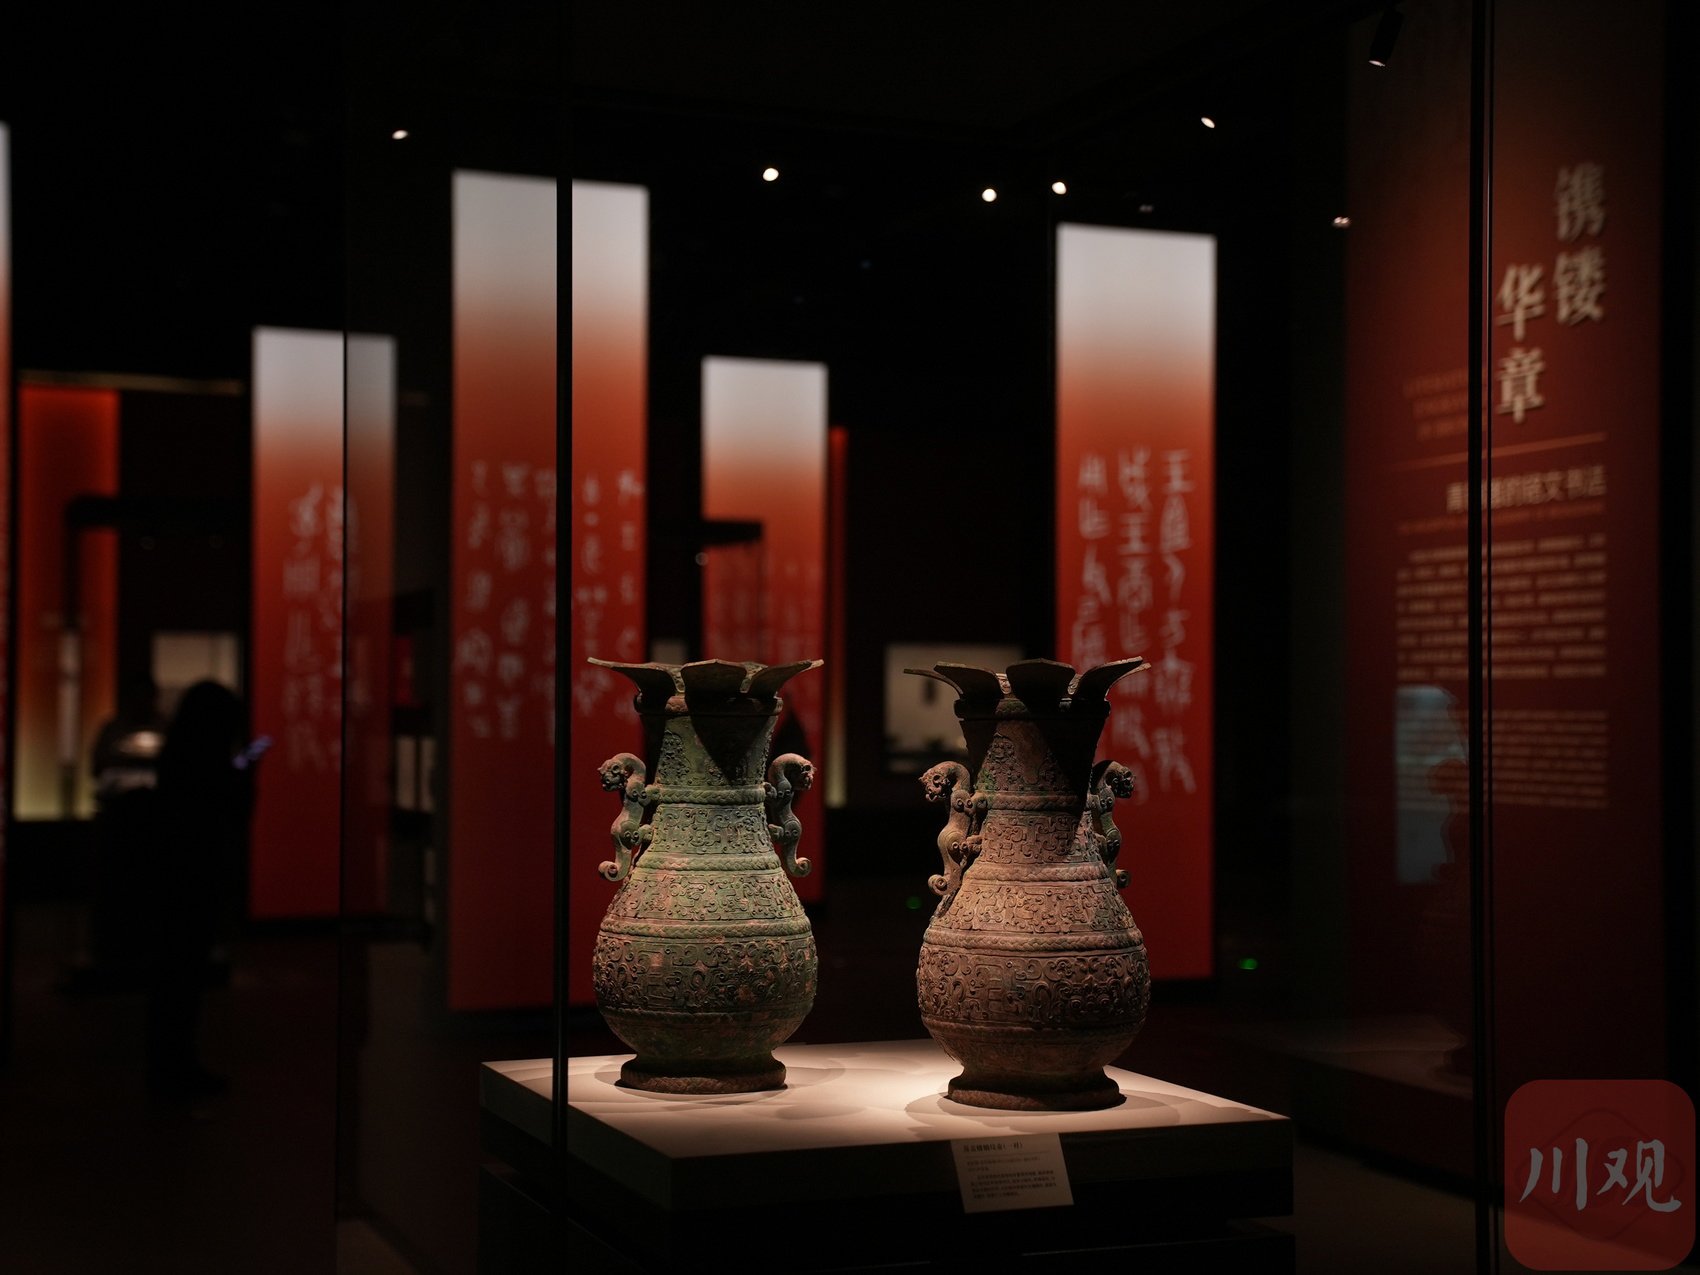 本次展览甄选国家博物馆收藏的各类青铜文物约160件，其中包括30余件/组一级文物。